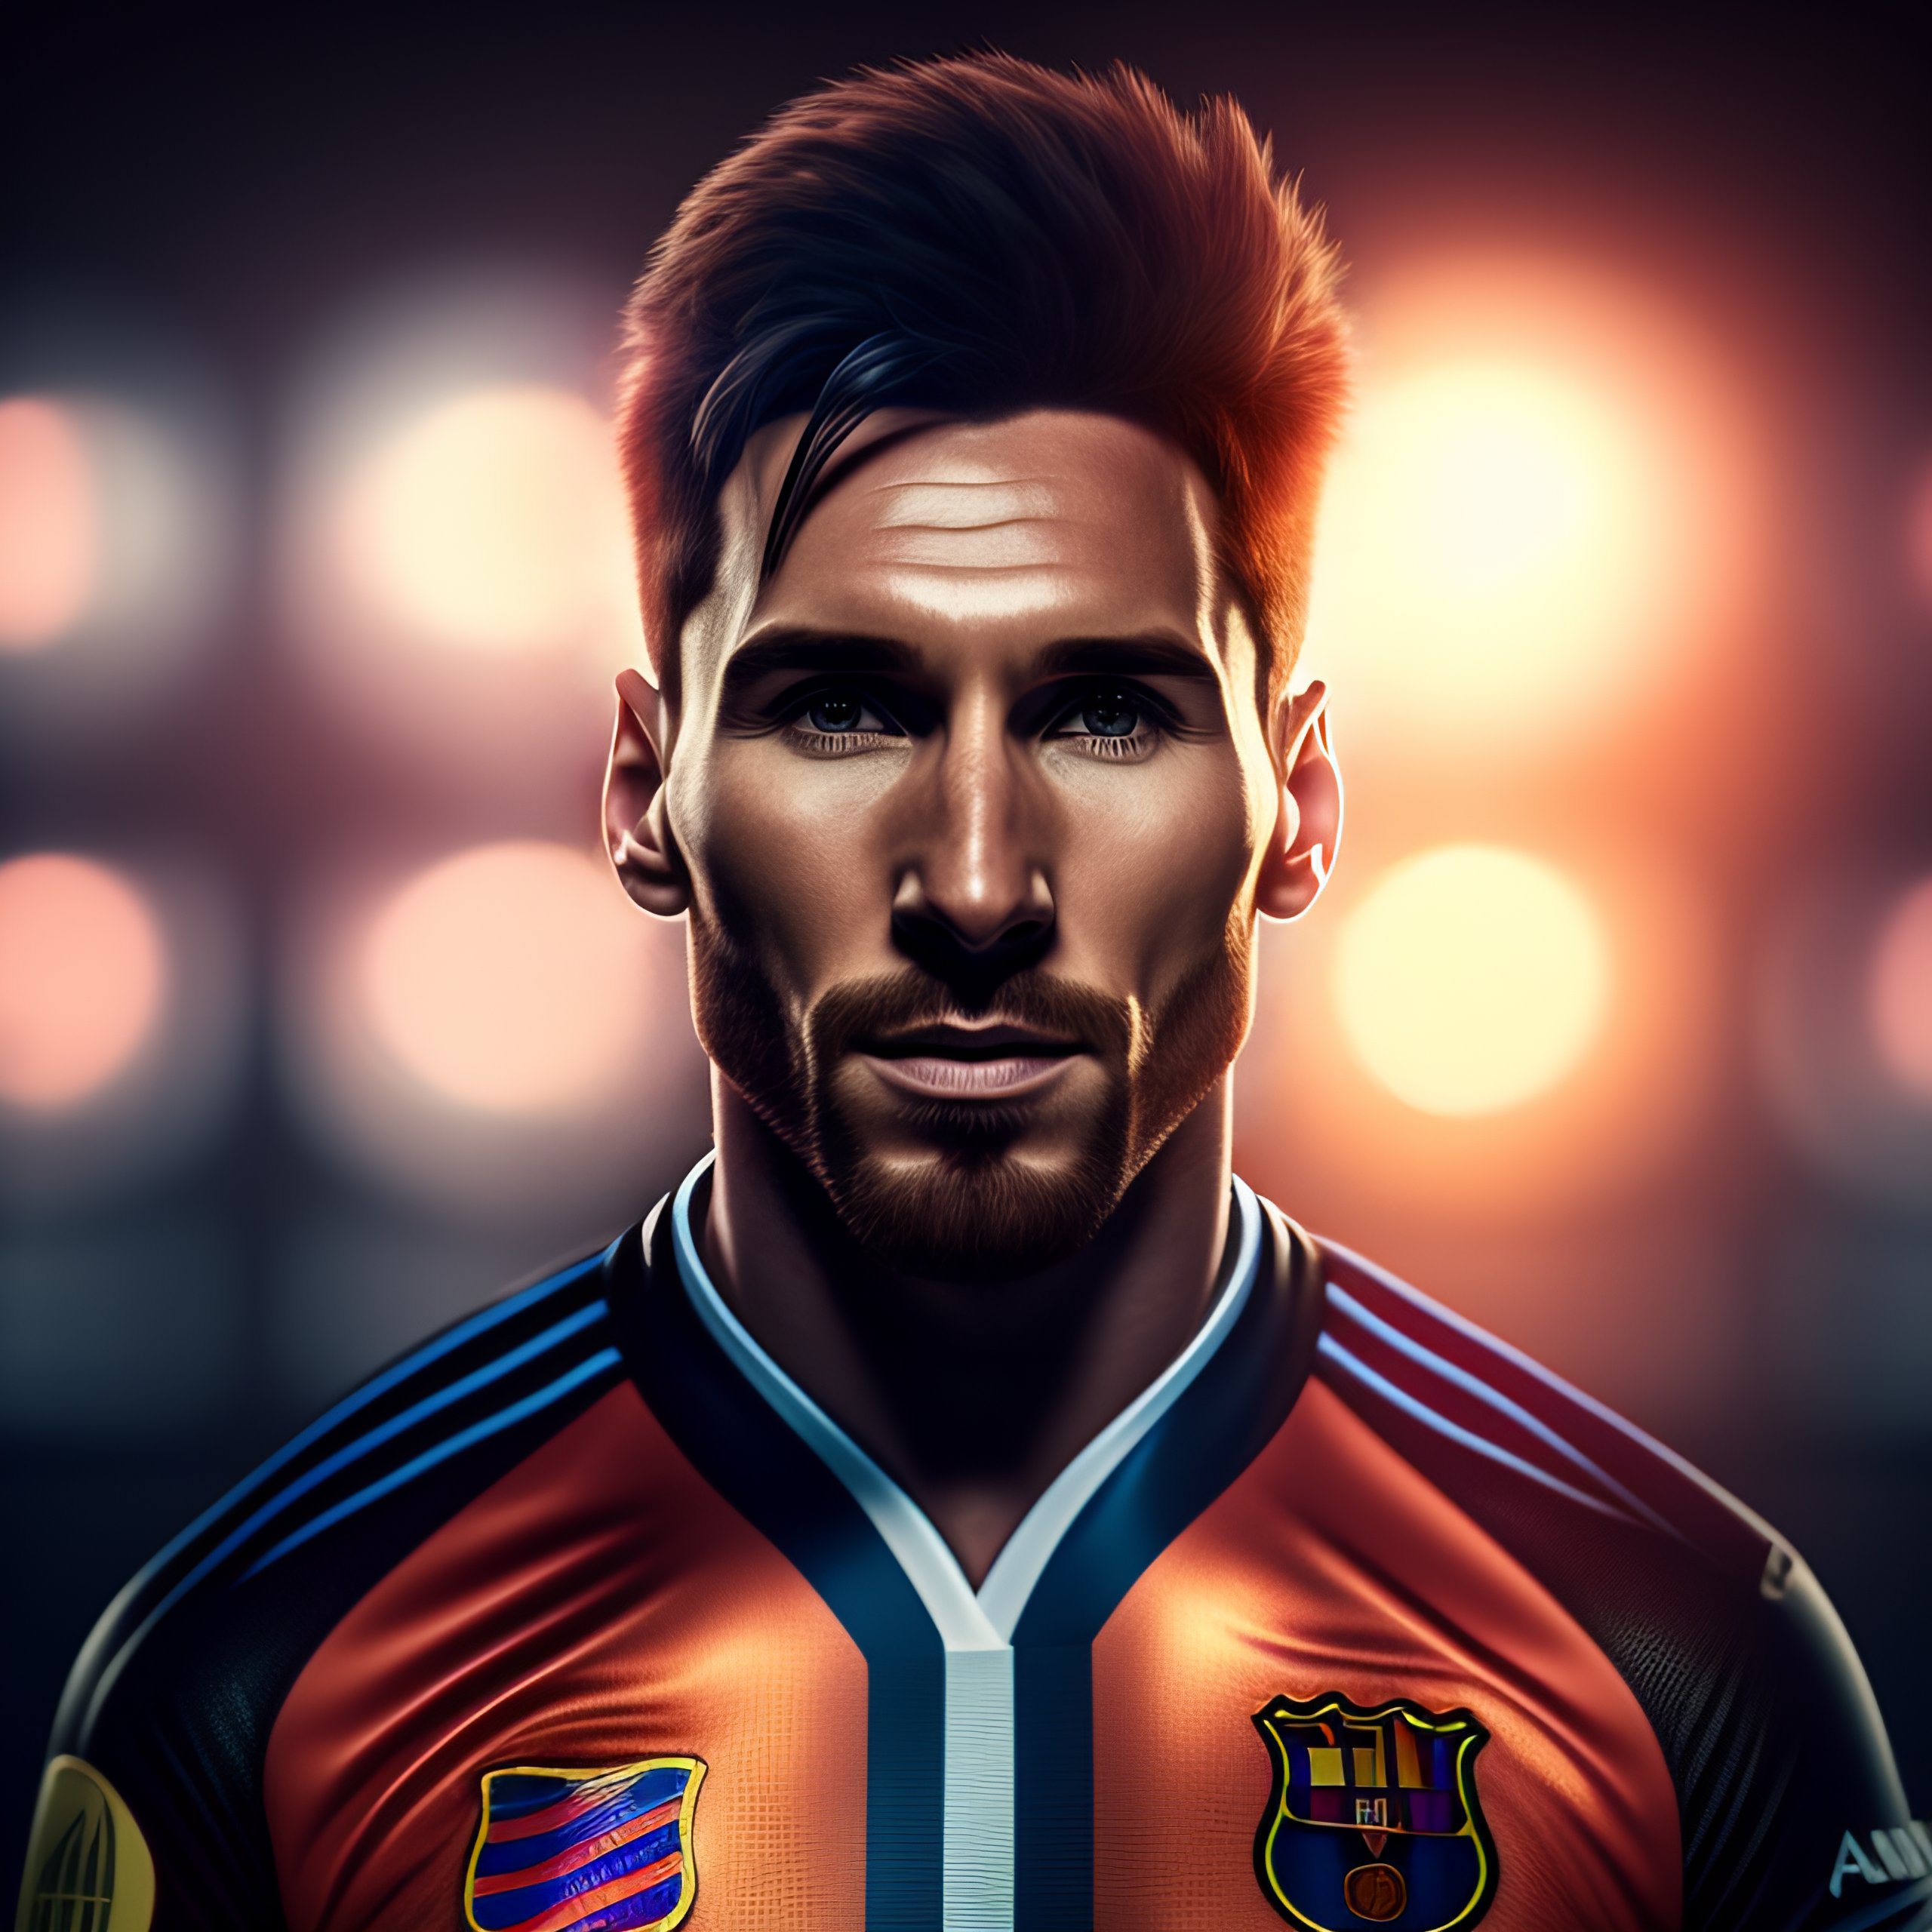 Ảnh chụp Messi - Điểm qua những khoảnh khắc tuyệt đẹp của Messi khiến cho các fan bóng đá không thể rời mắt. Với chất lượng hình ảnh cực kỳ sắc nét, bạn sẽ không thể nhịn được nụ cười thích thú khi chiêm ngưỡng những tấm ảnh chụp Messi này.